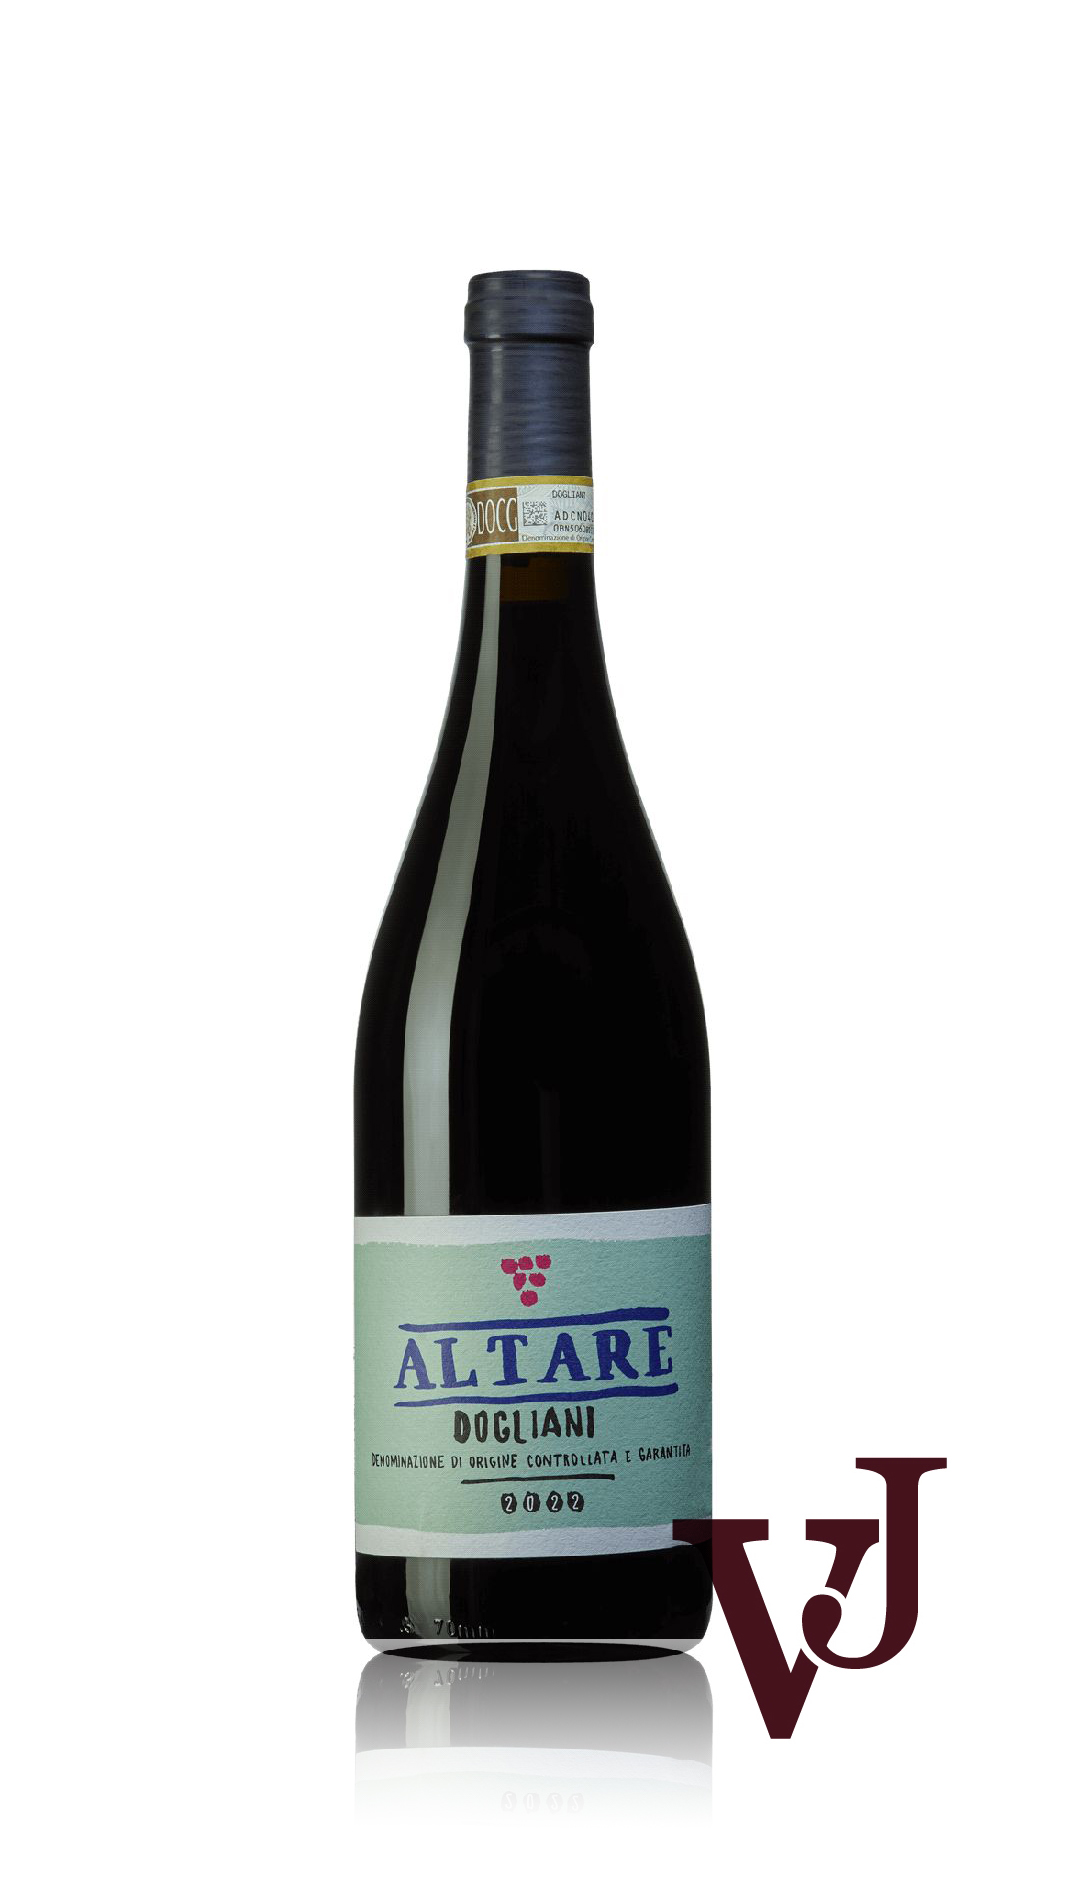 Rött Vin - Altare Dogliani artikel nummer 9364601 från producenten Azienda Agricola Altare di Altare Nicholas från Italien